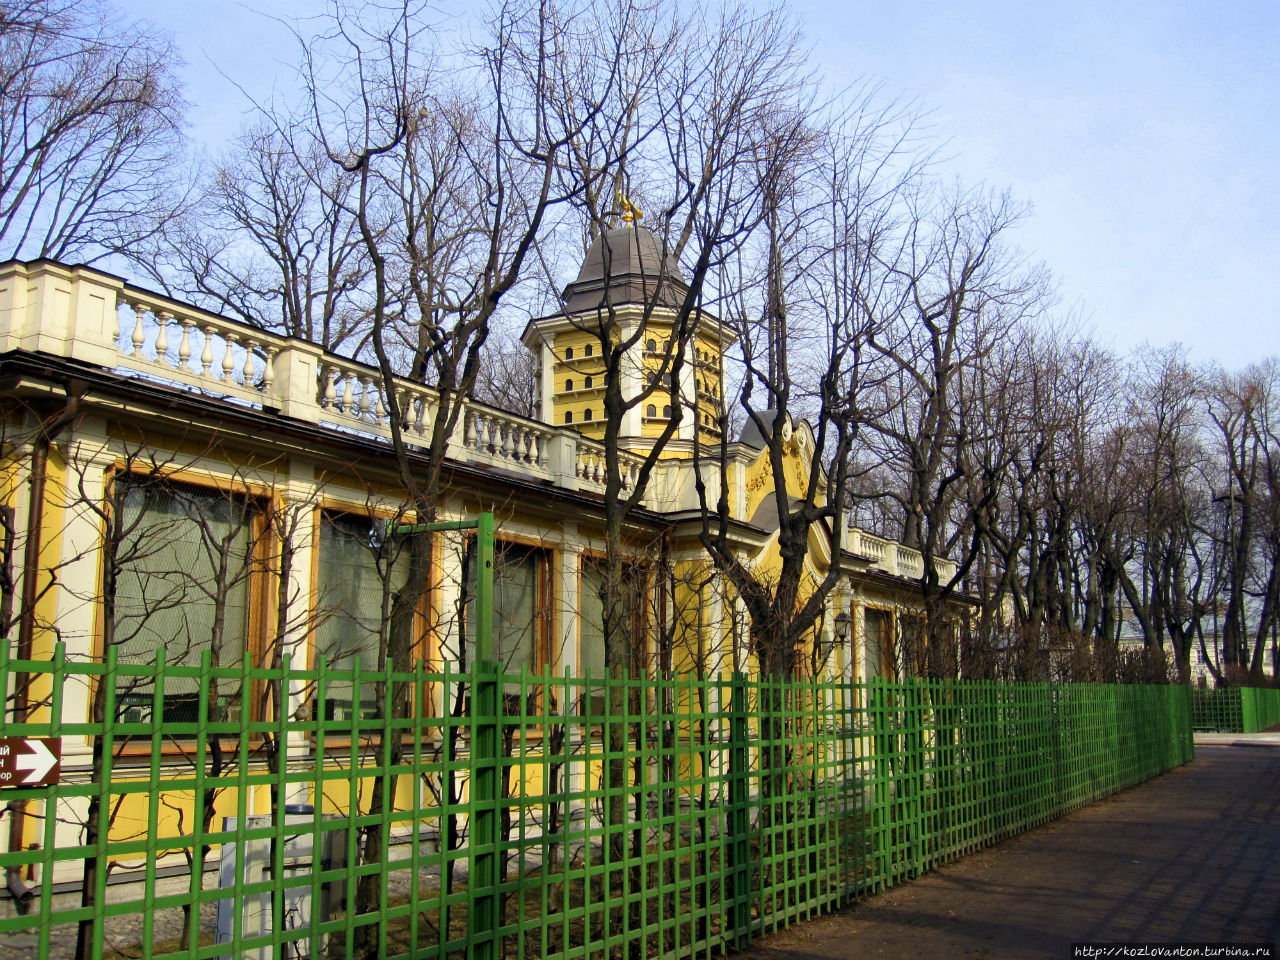 Зверинец (или Птичник) Летнего сада, просуществовавший до 1780 г. и воссозданный в 2012 г. Санкт-Петербург, Россия